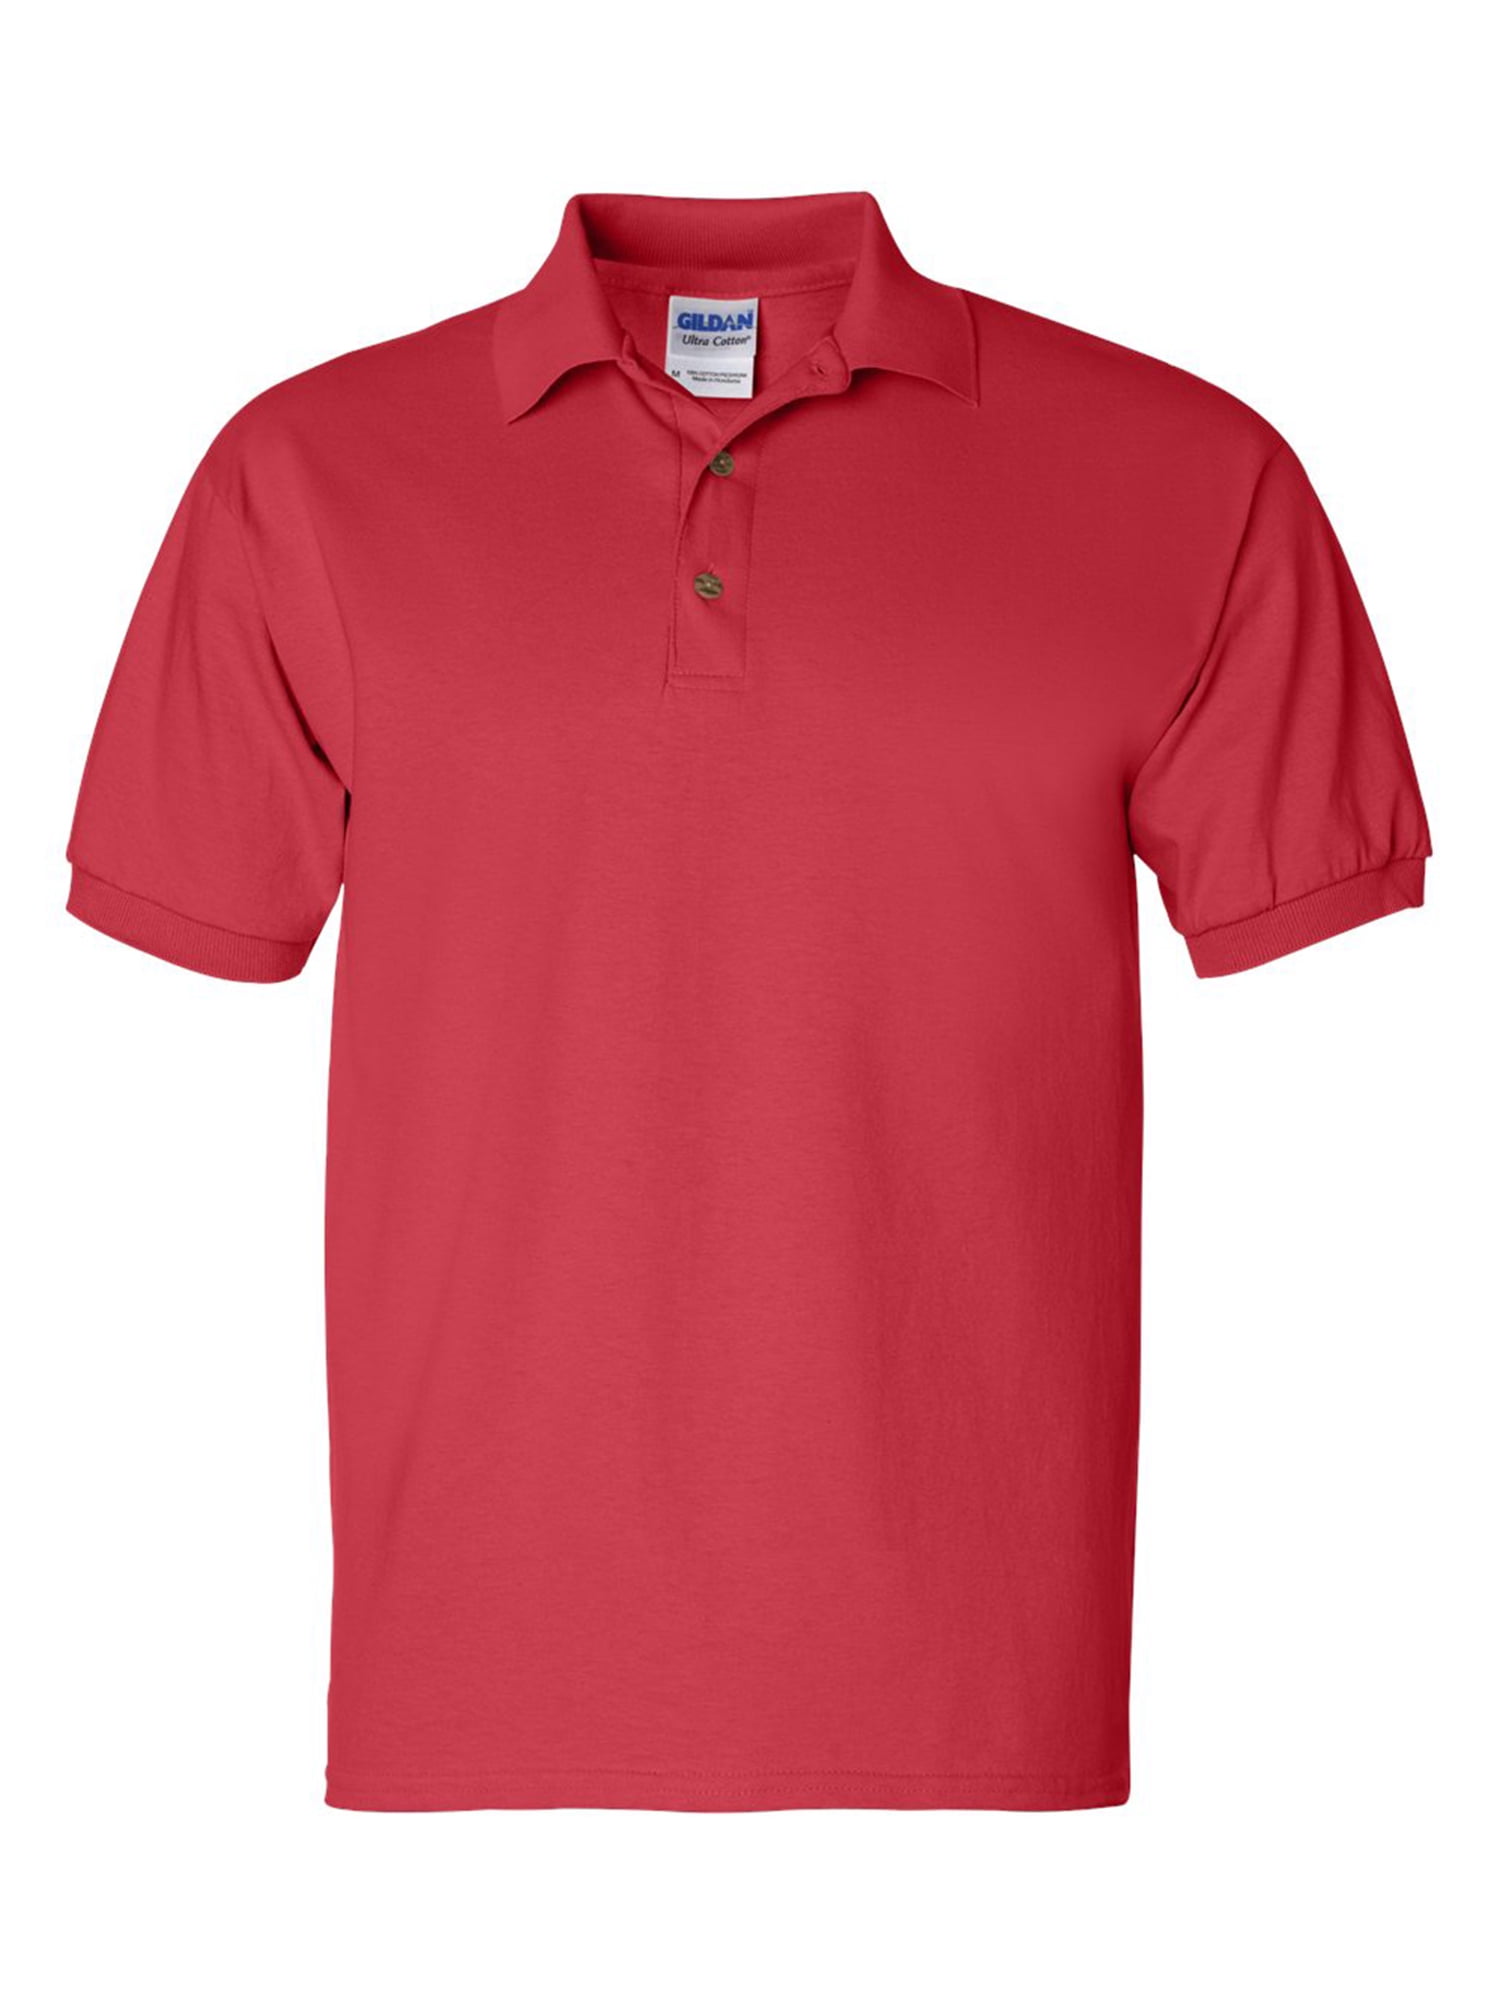 2XL XXL Tee Top Red 100/% Cotton Short Sleeve EC04 Polo Shirt T Shirt Size XL